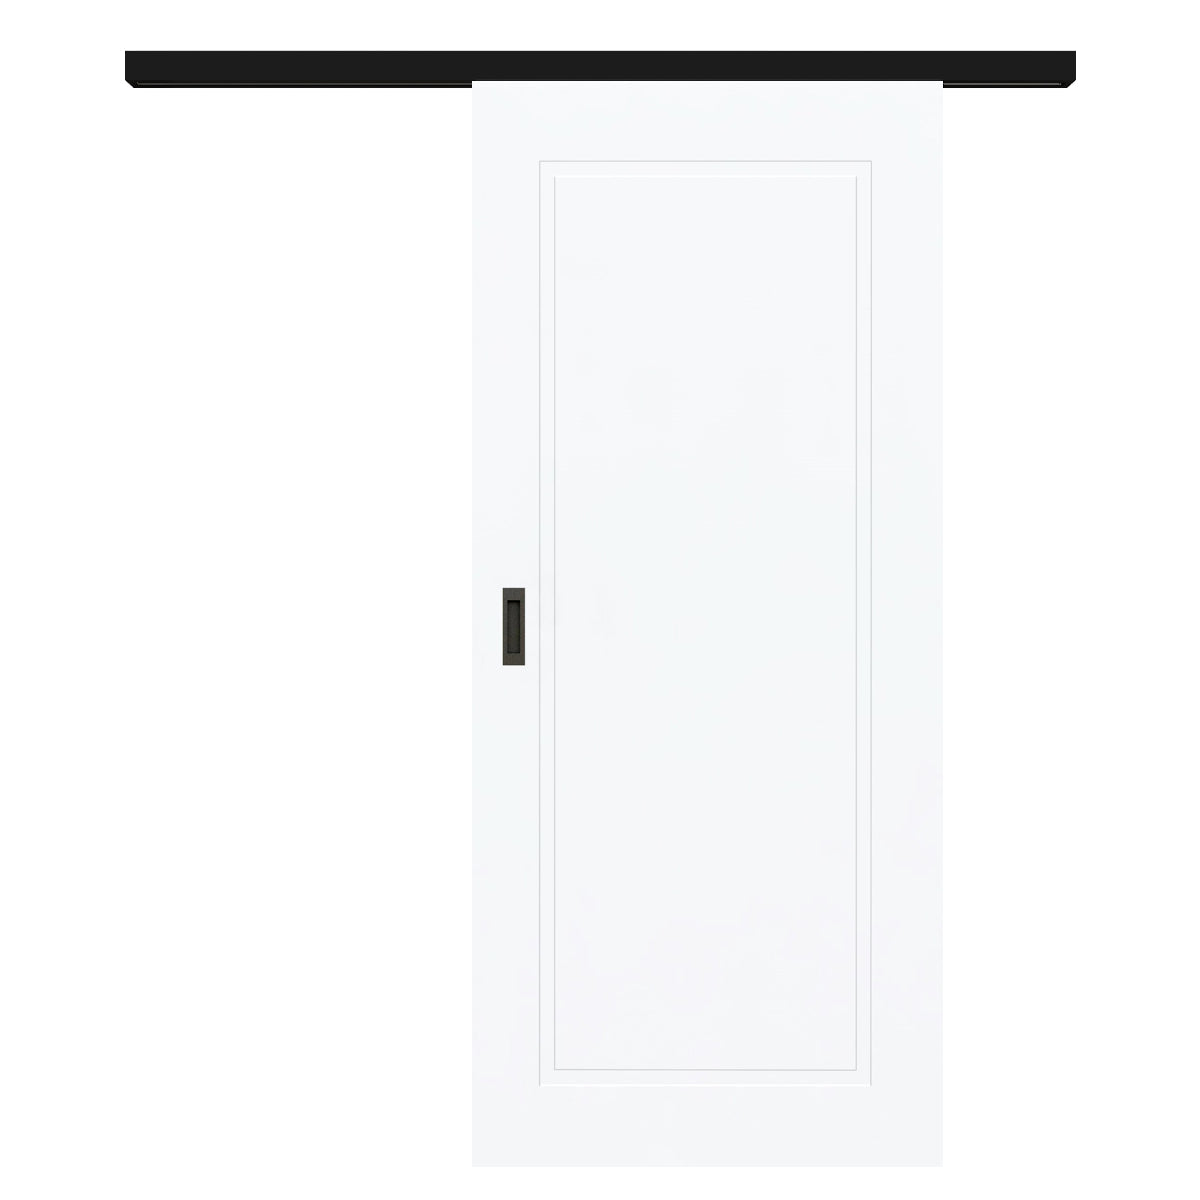 Schiebetür für Set mit schwarzem Laufkasten brillant-weiß Stiltür mit 1 Kassette - Modell Stiltür M13